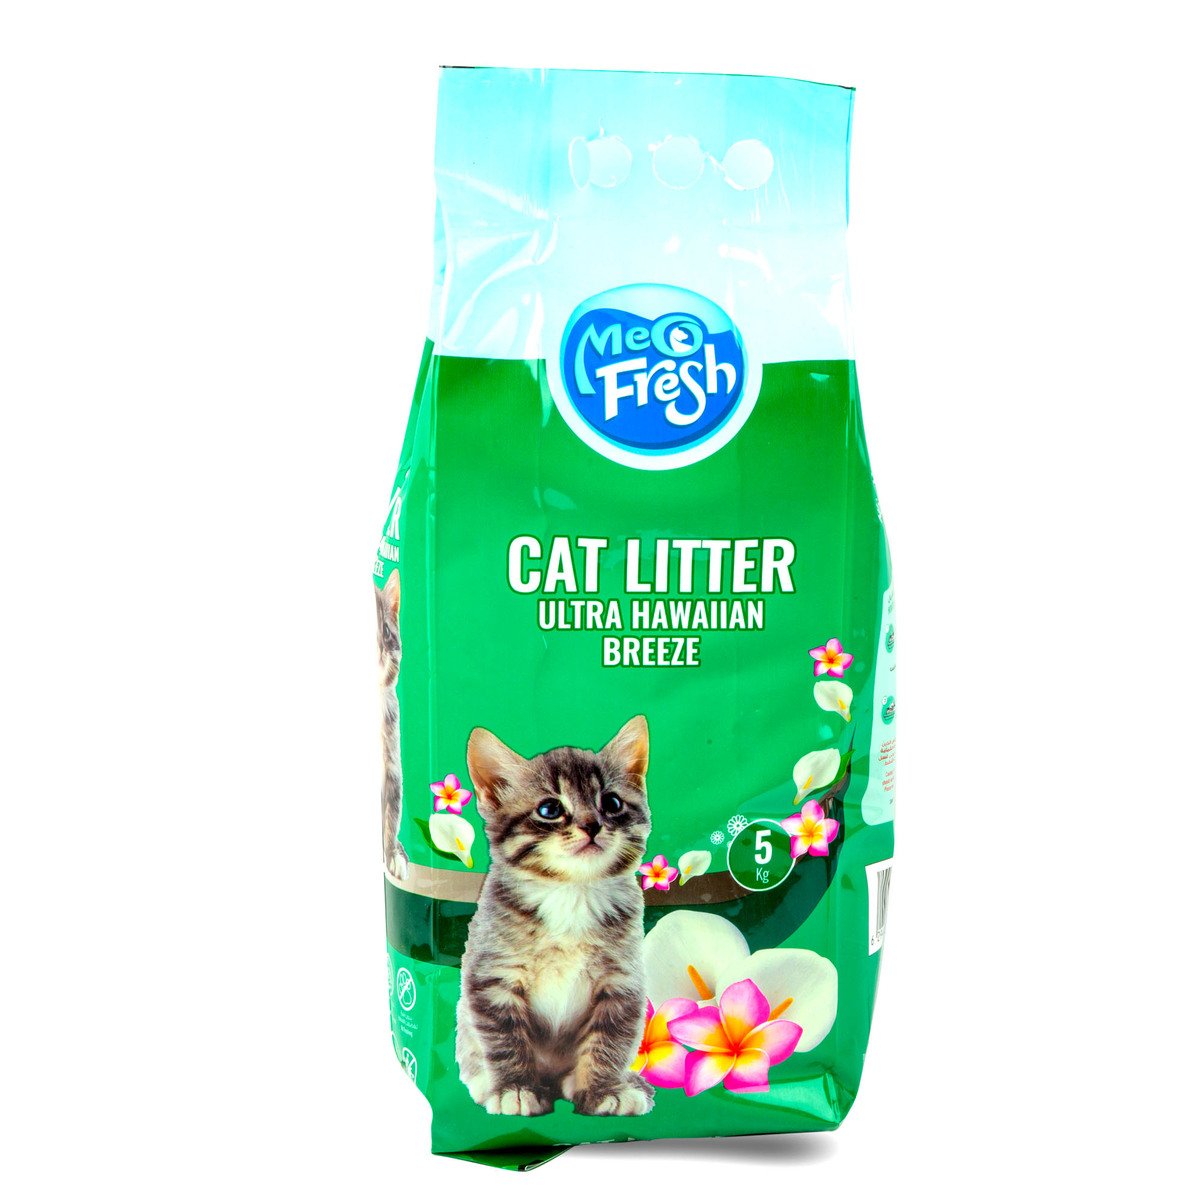 اشتري قم بشراء ميو فريش فرش لفضلات القطط برائحة نسيم هاواي 5 كجم Online at Best Price من الموقع - من لولو هايبر ماركت Cat Litter في السعودية